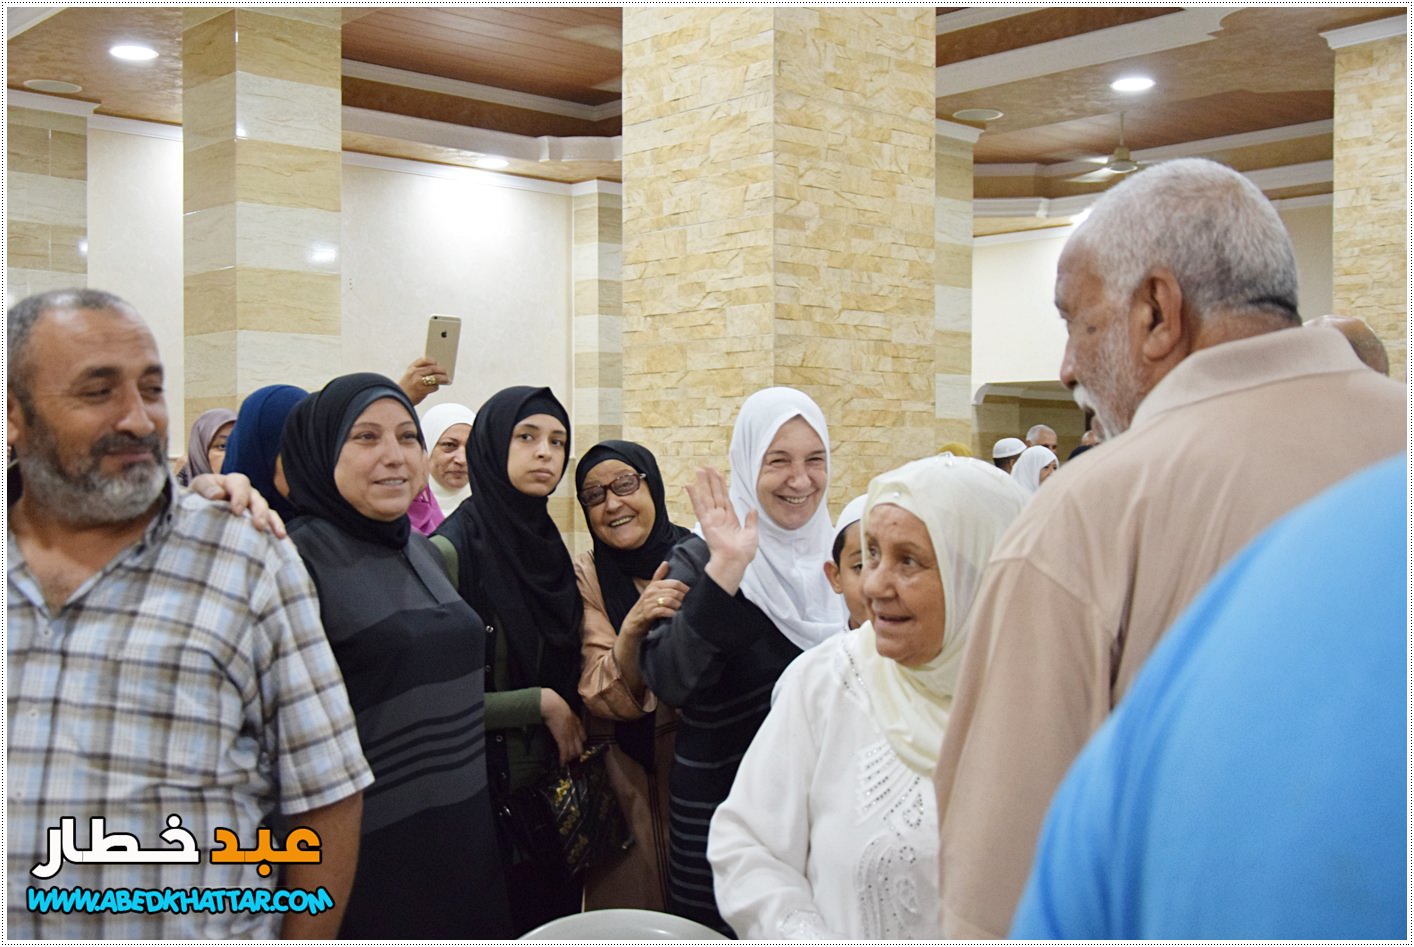 احتفال تكريم حجاج بيت الله الحرام في مخيم البداوي تحت رعاية اللجنة الشعبية ولجنة رعاية المساجد